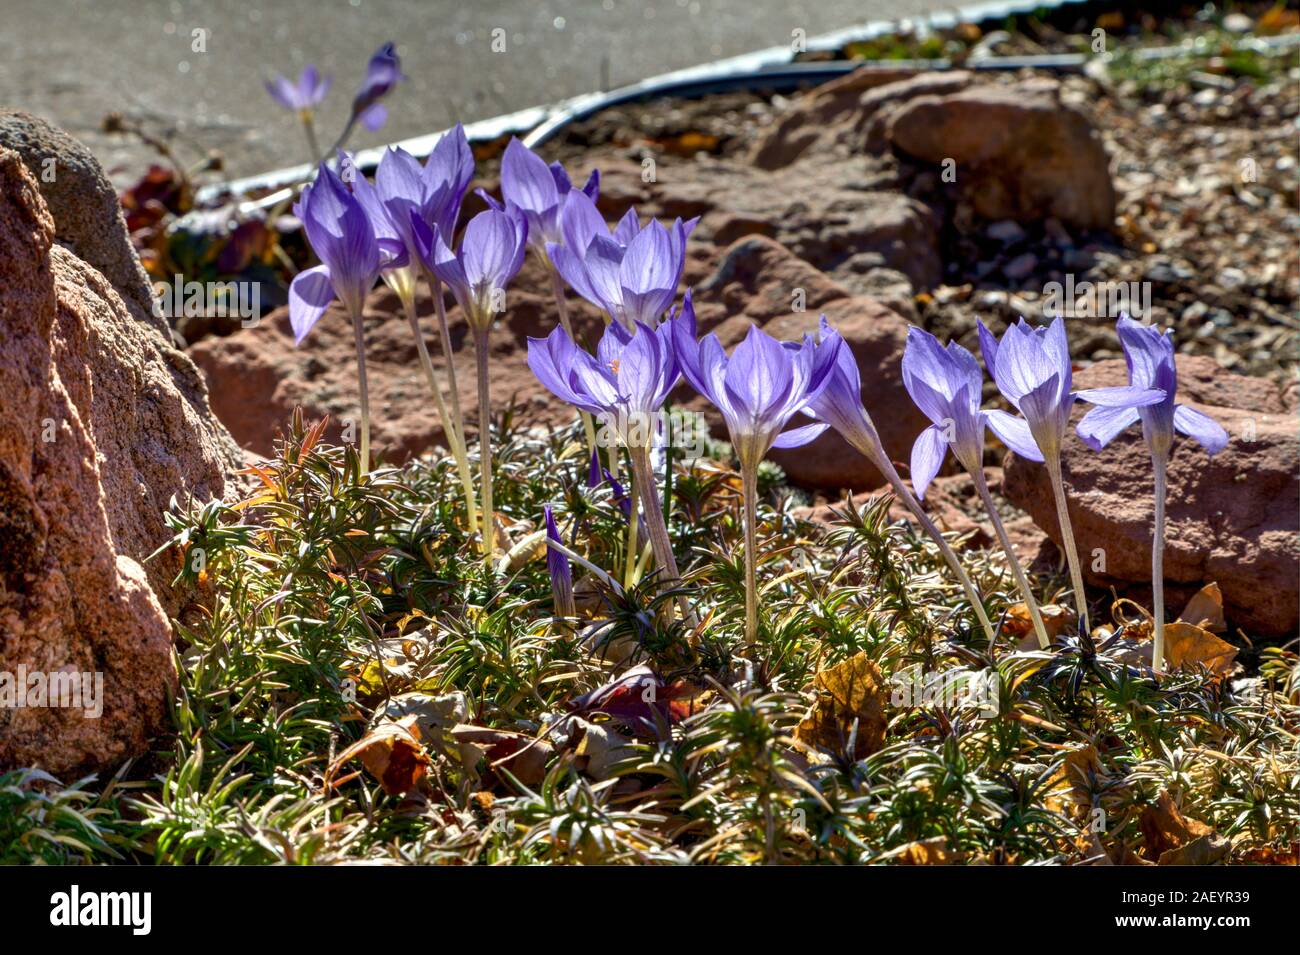 La caída Bieberstein Crocus flores están en plena floración en su típico tallos y espalda iluminada por el sol del mediodía. Foto de stock